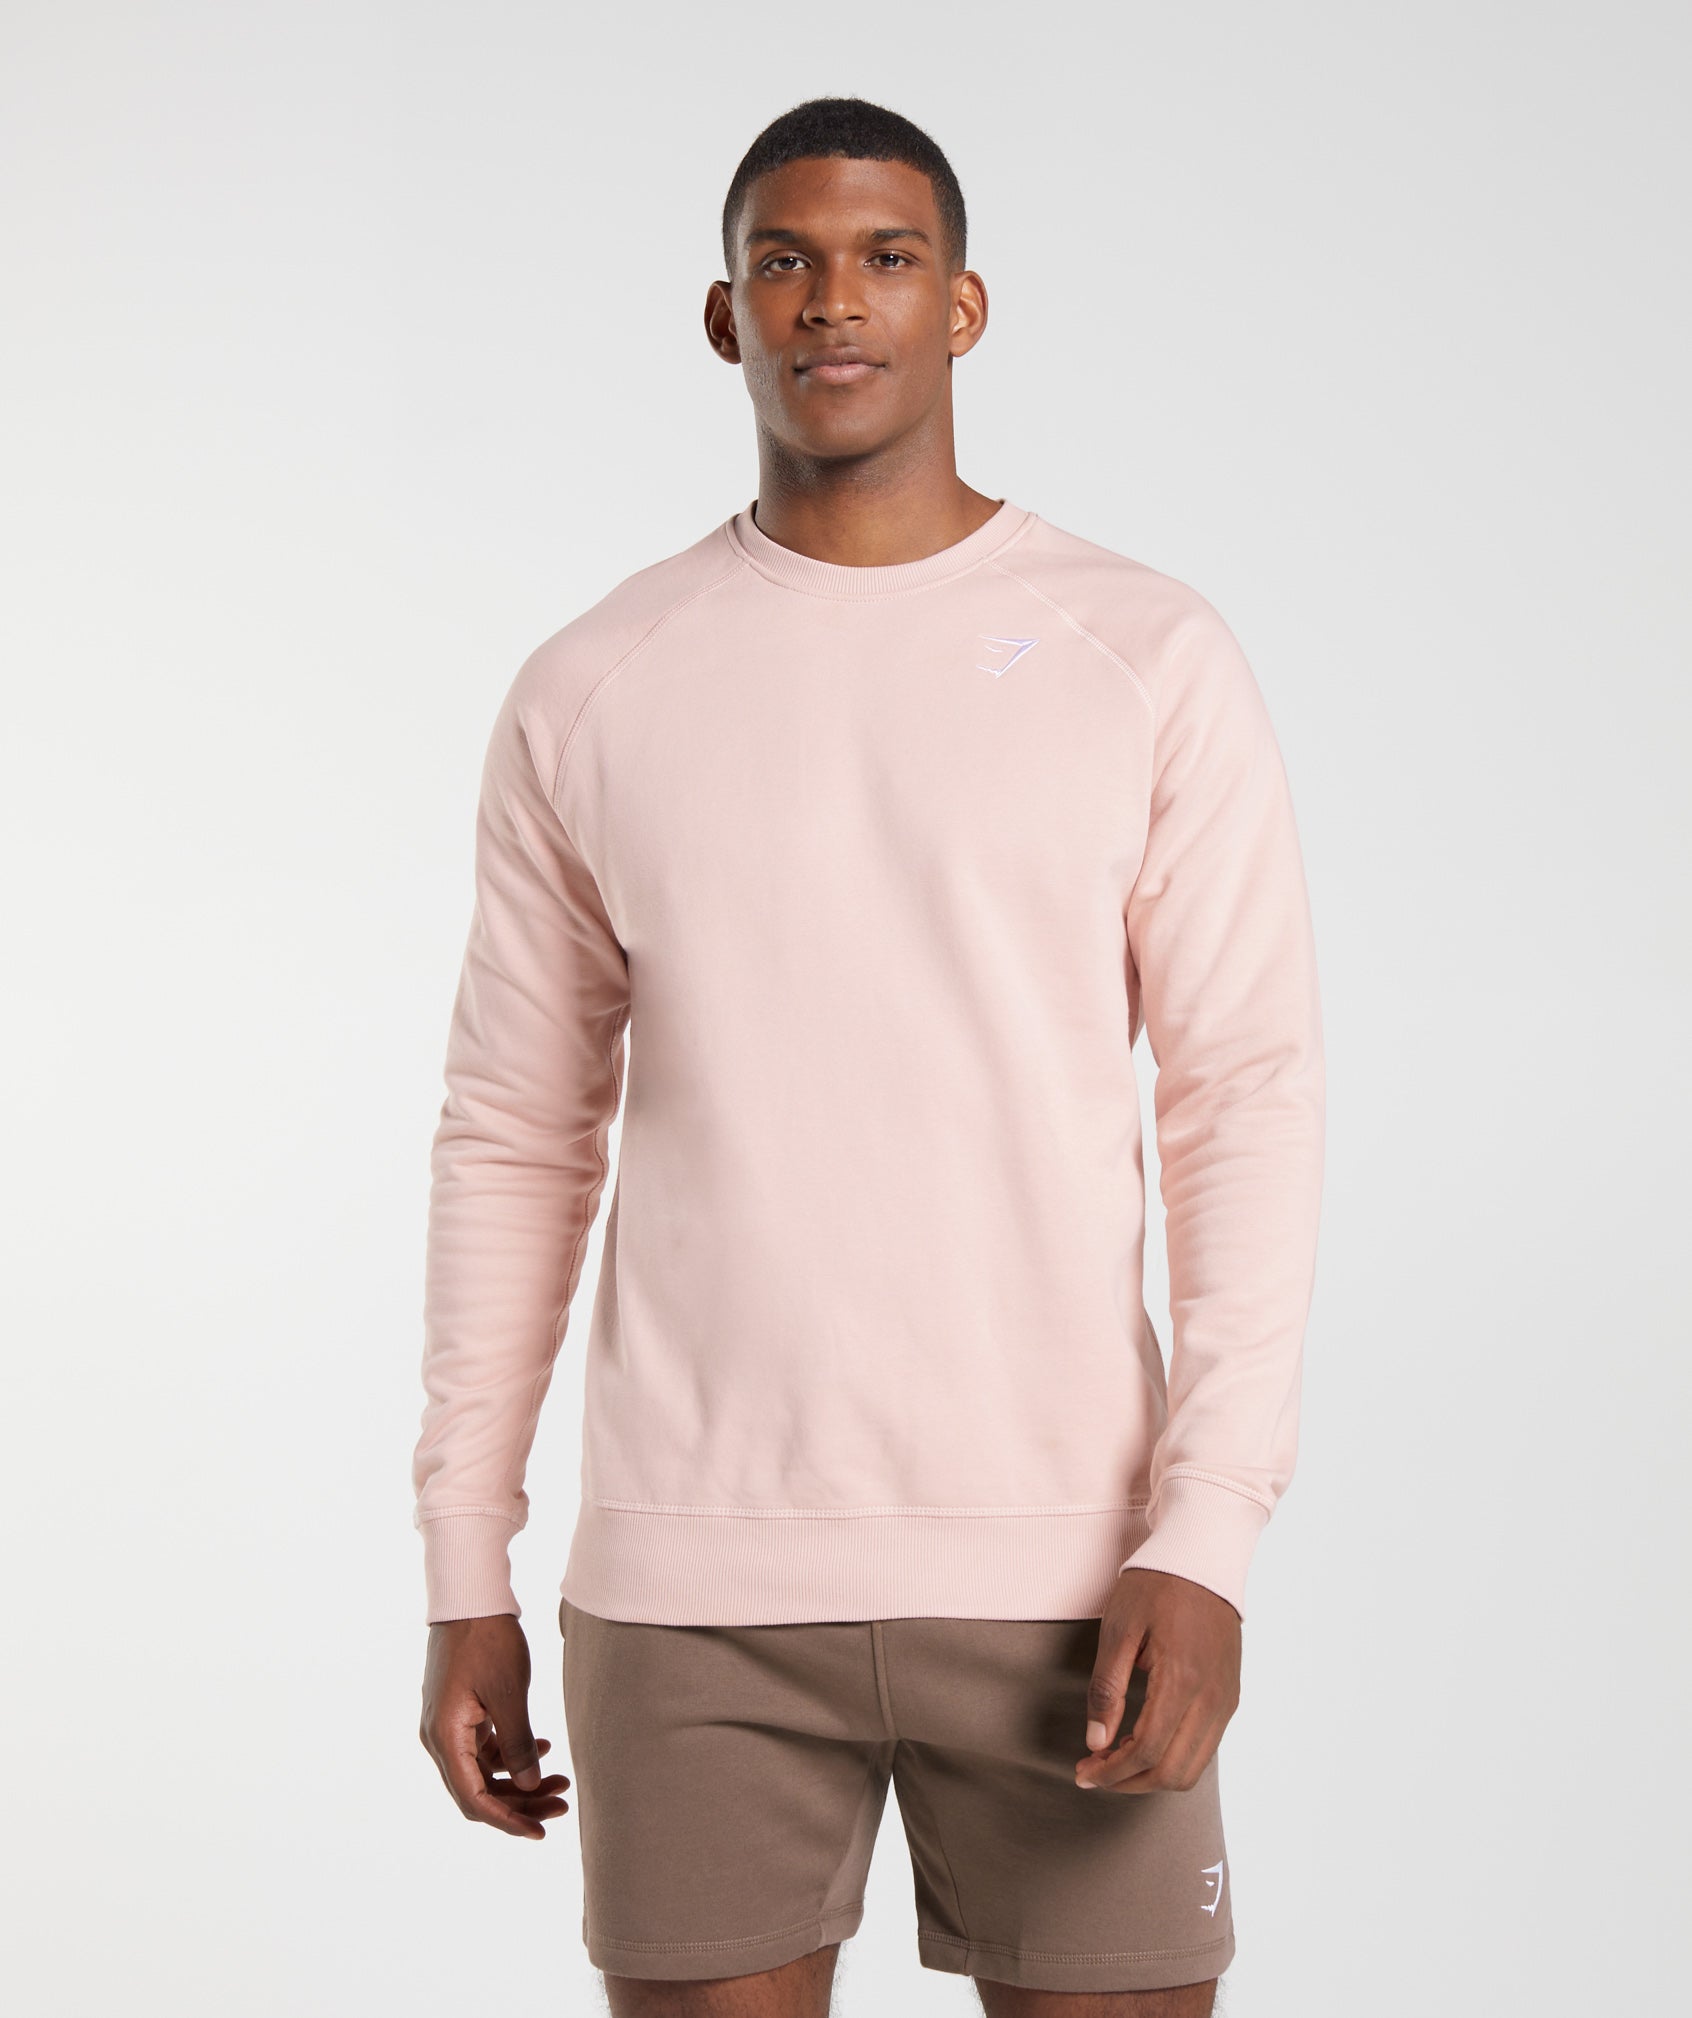 Crest Sweatshirt in Misty Pink - view 1